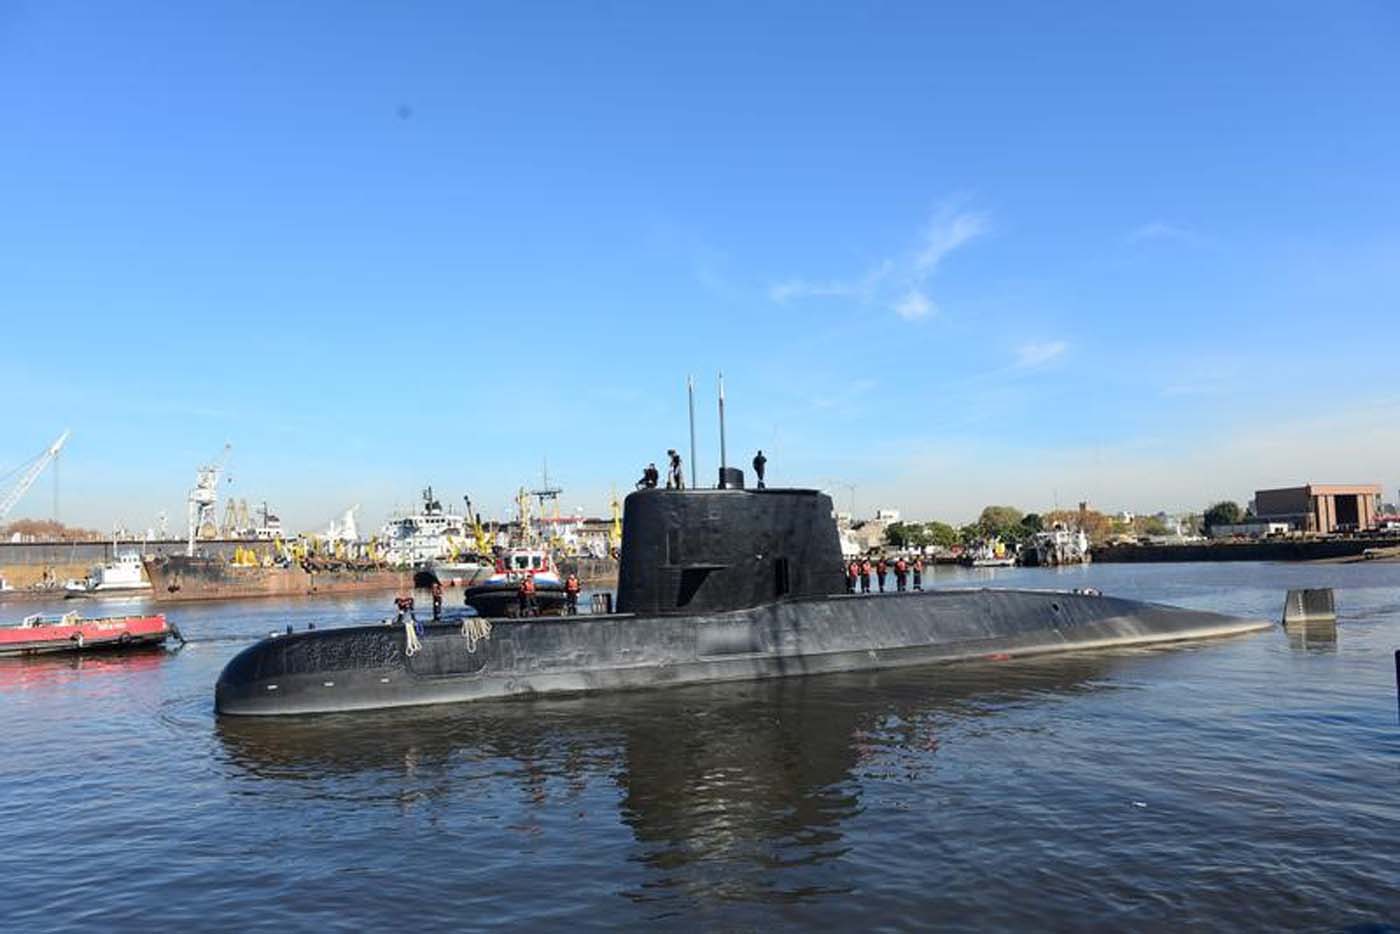 Analizan si un objeto a 940 metros de profundidad es el submarino argentino